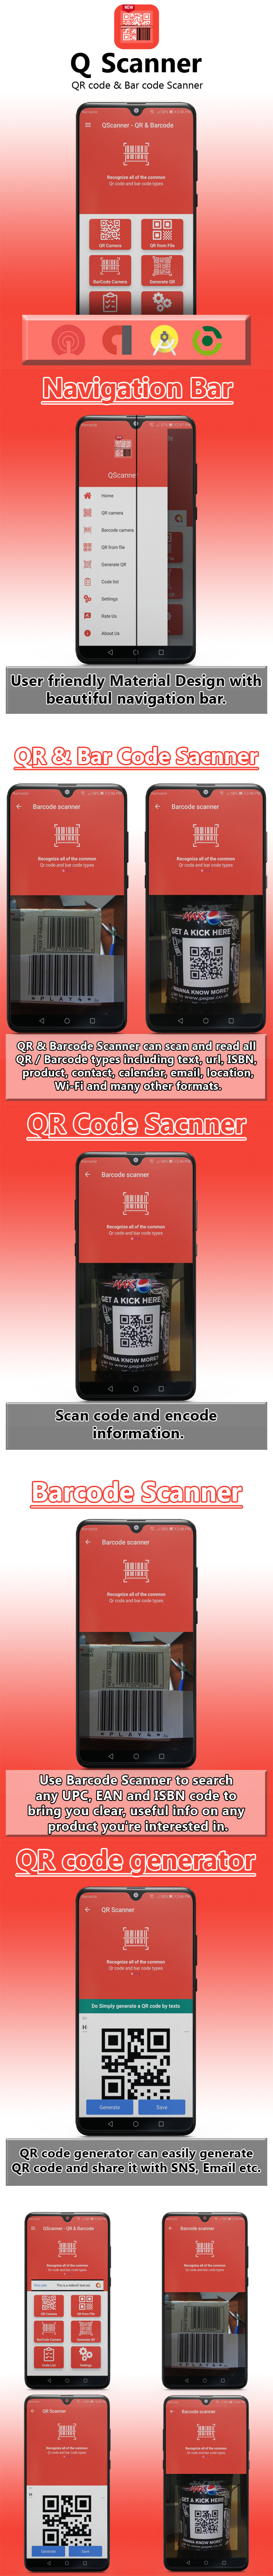 QScanner - QR & Barcode Pro - 5